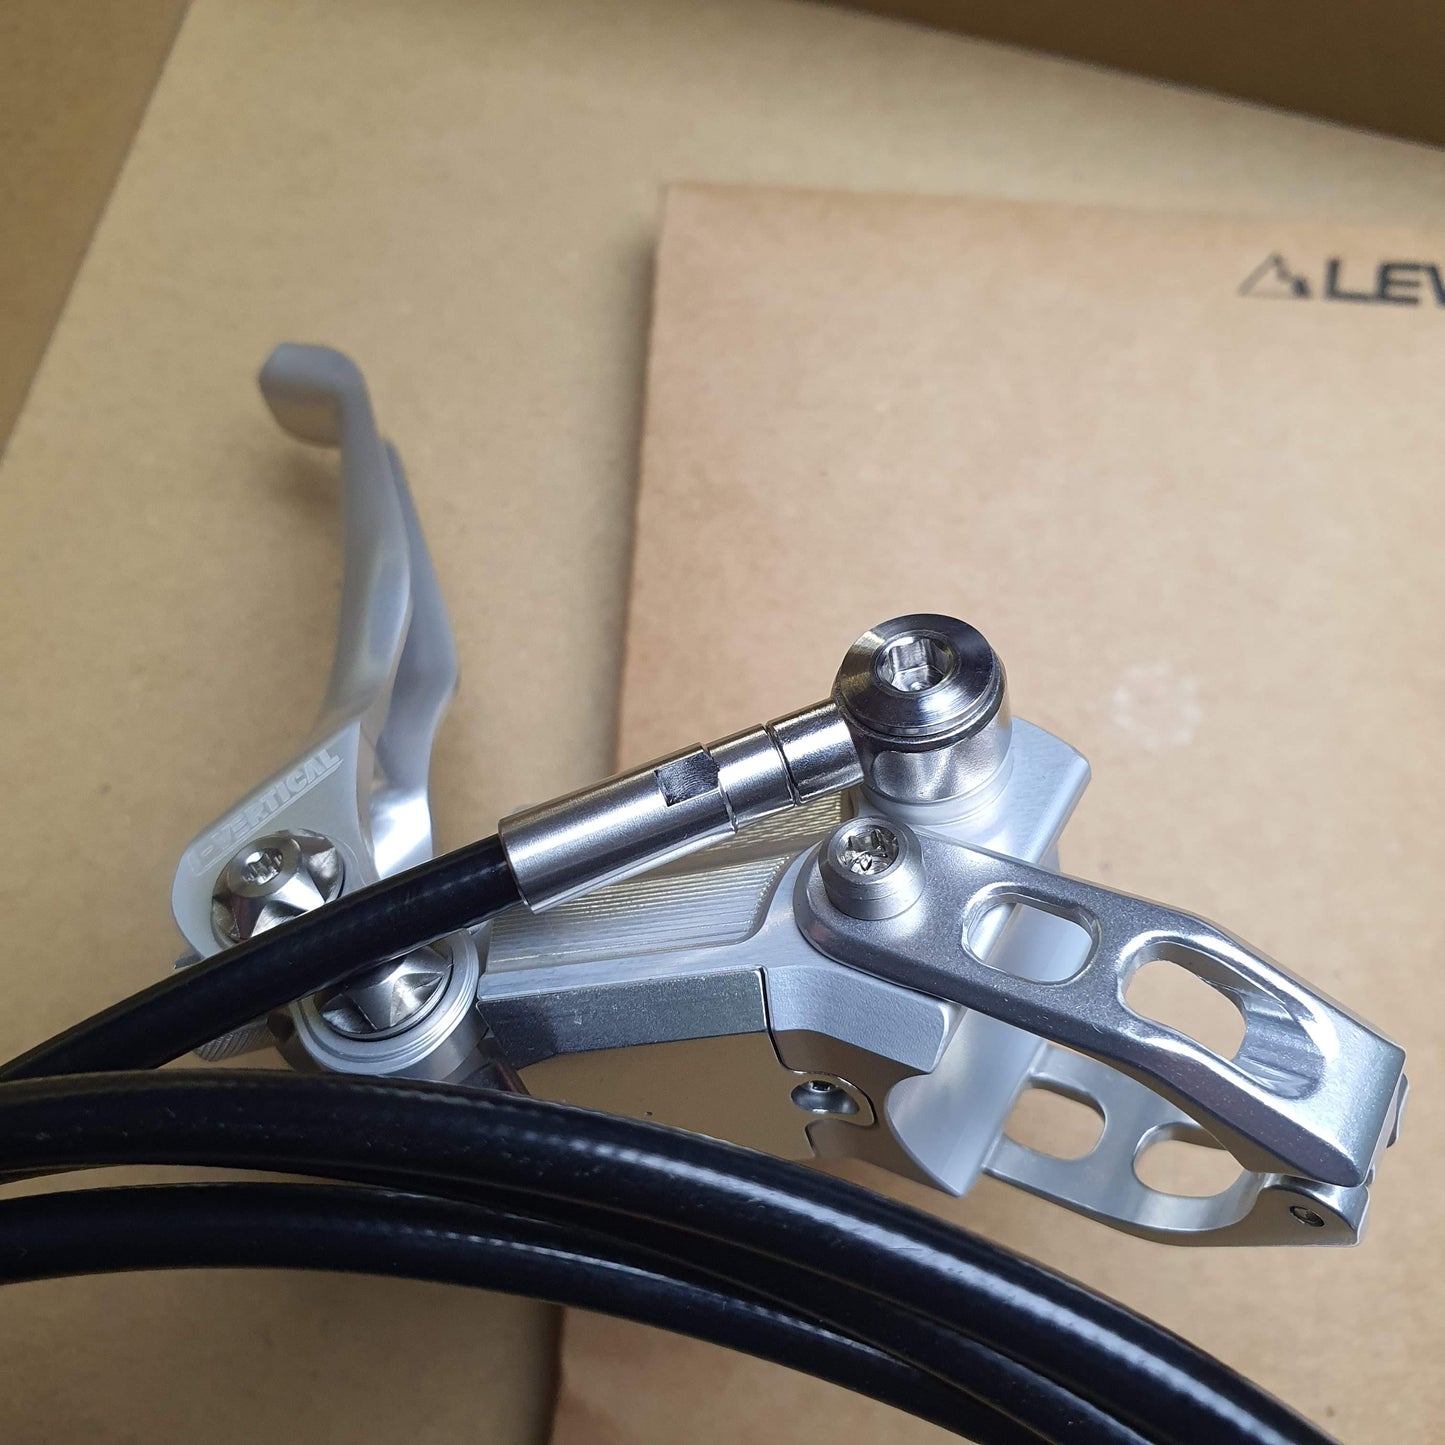 Freio de pistões duplos Lewis LV2 para bicicleta de teste XC | Superleve | Frete grátis mundial